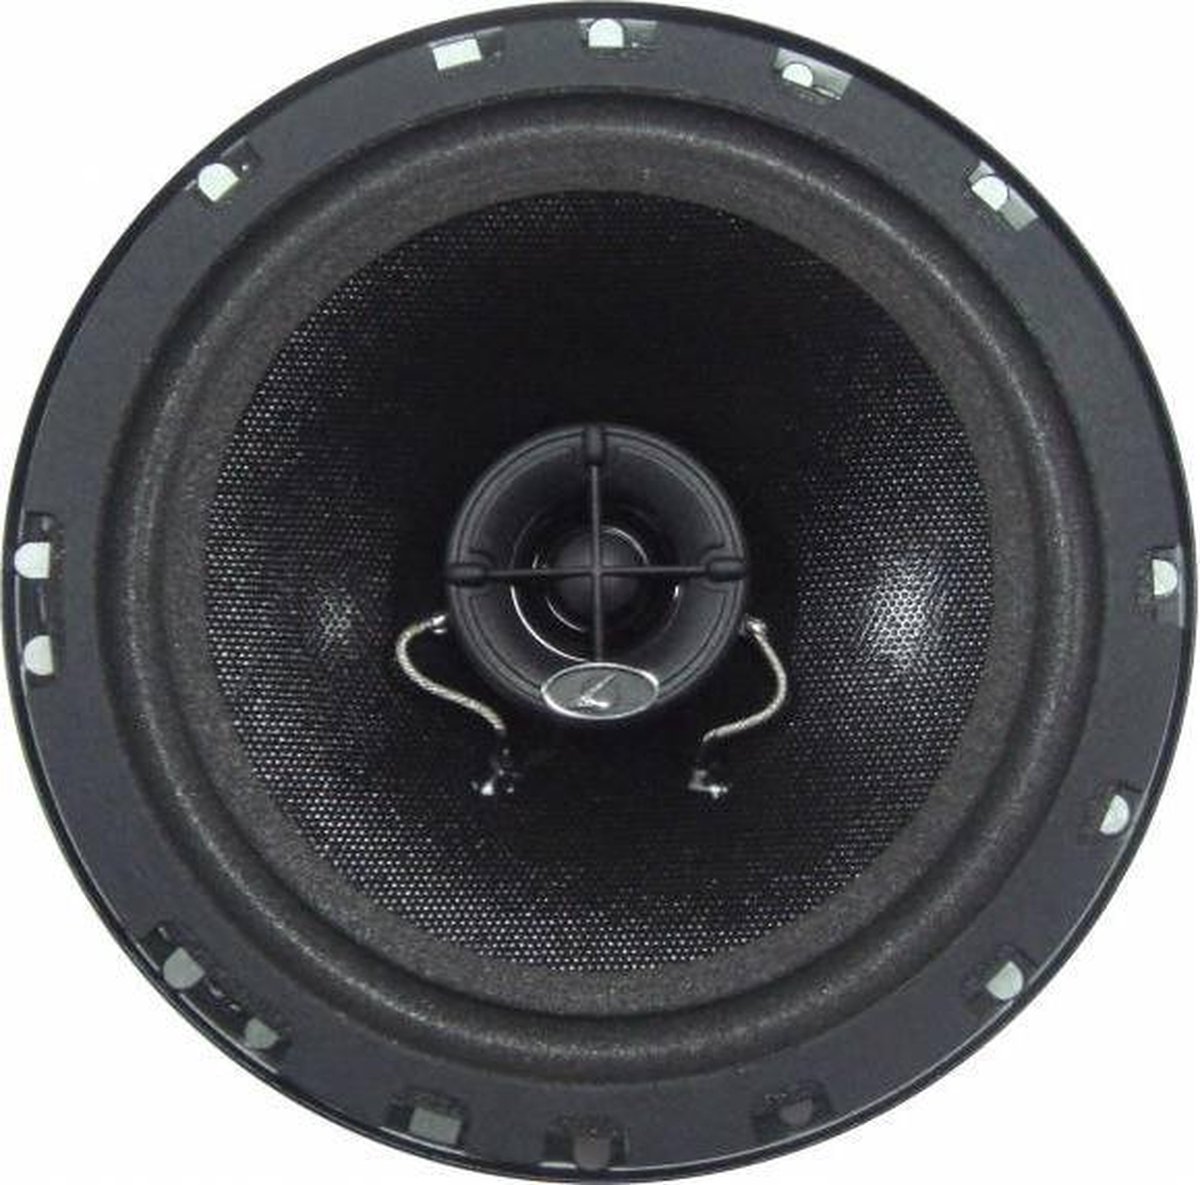 gordijn Onzin Doornen Calearo - EL 165 - COAX - 2-WEG - auto speakers - set (2stuks) - 165MM 16, 5CM 16.5 cm... | bol.com